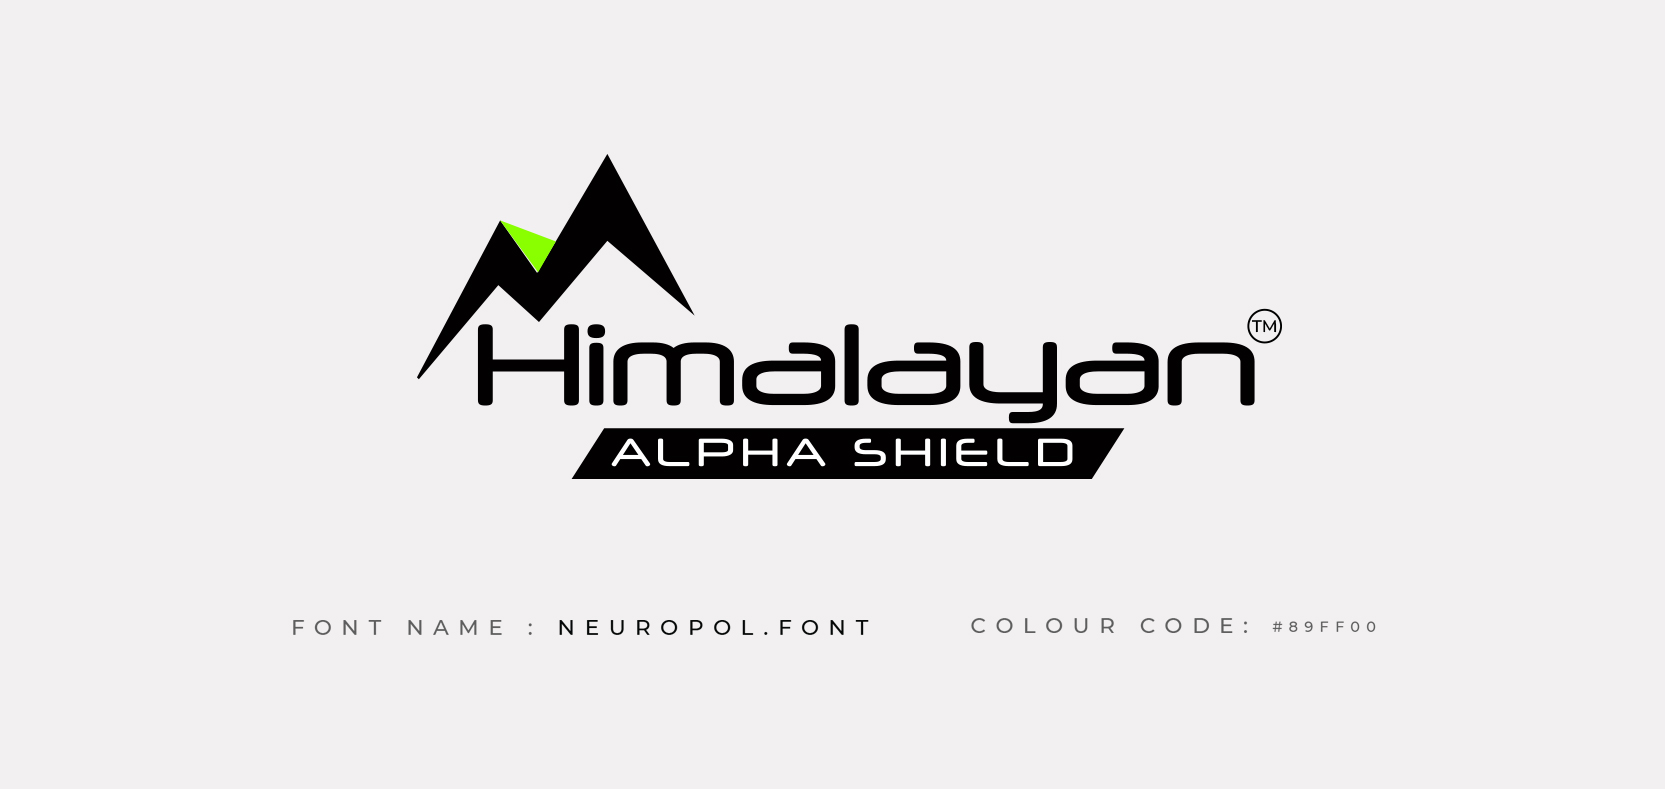 himalayan products logo design